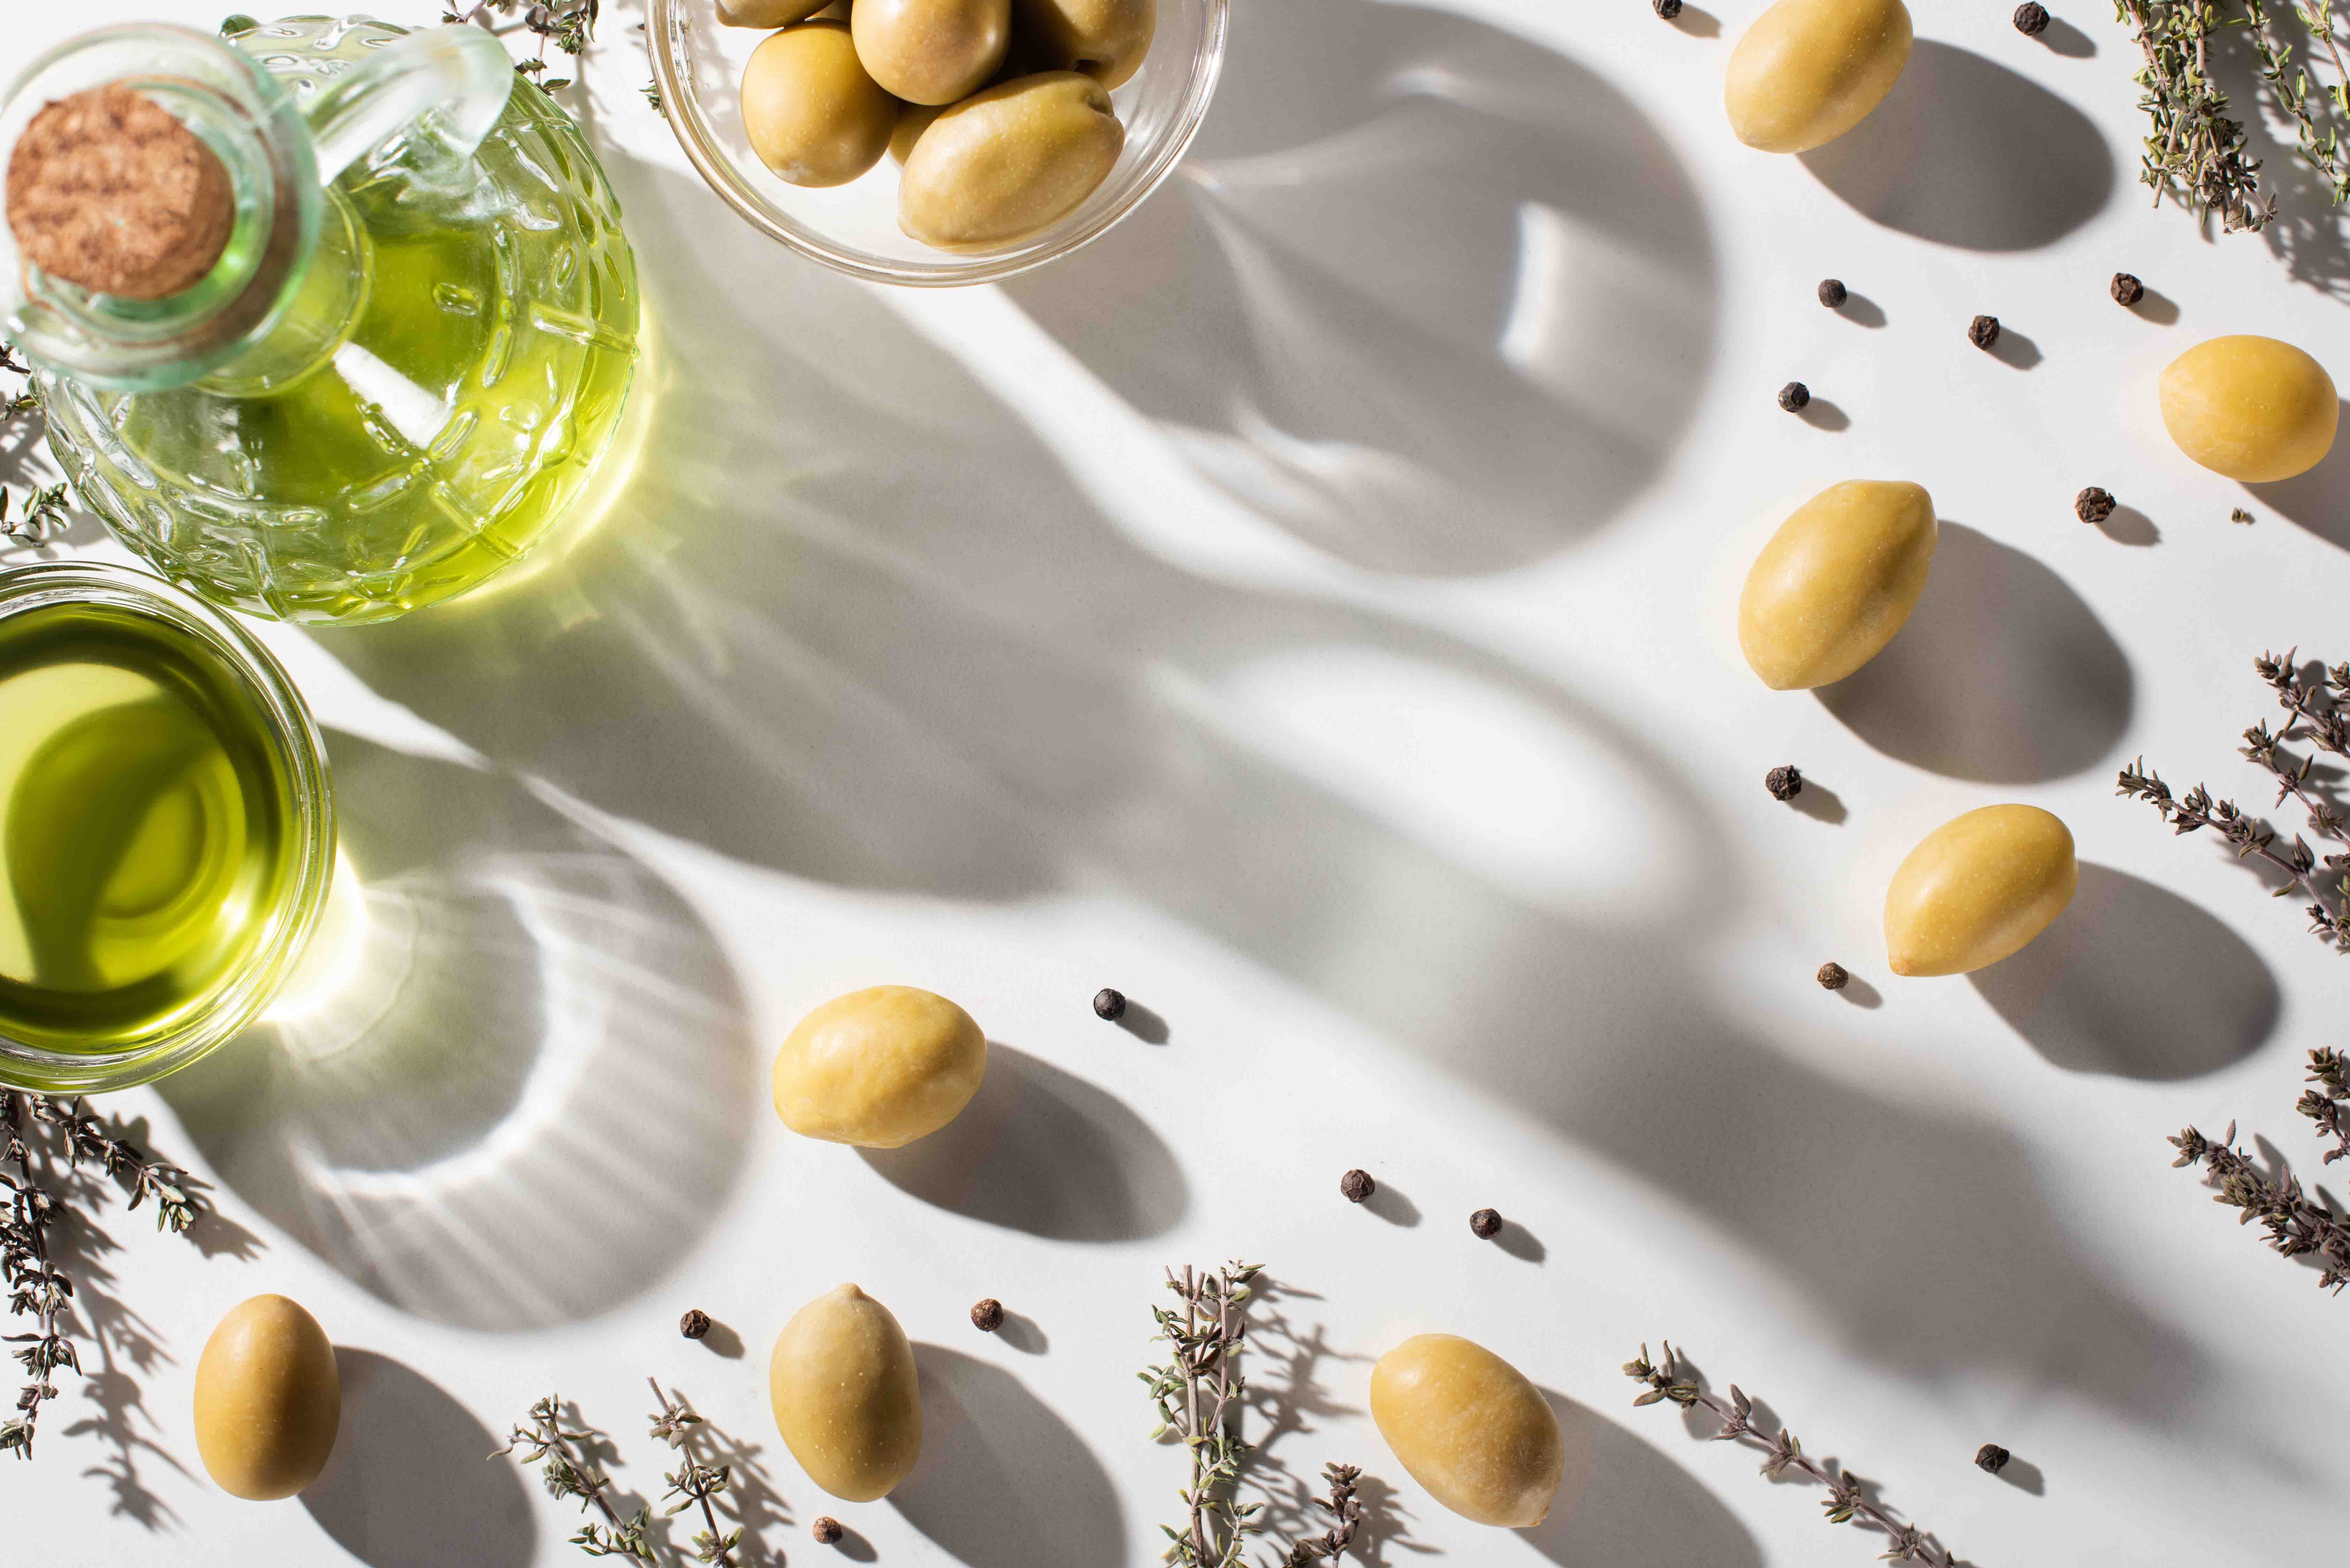 Benefits of olive oil massage